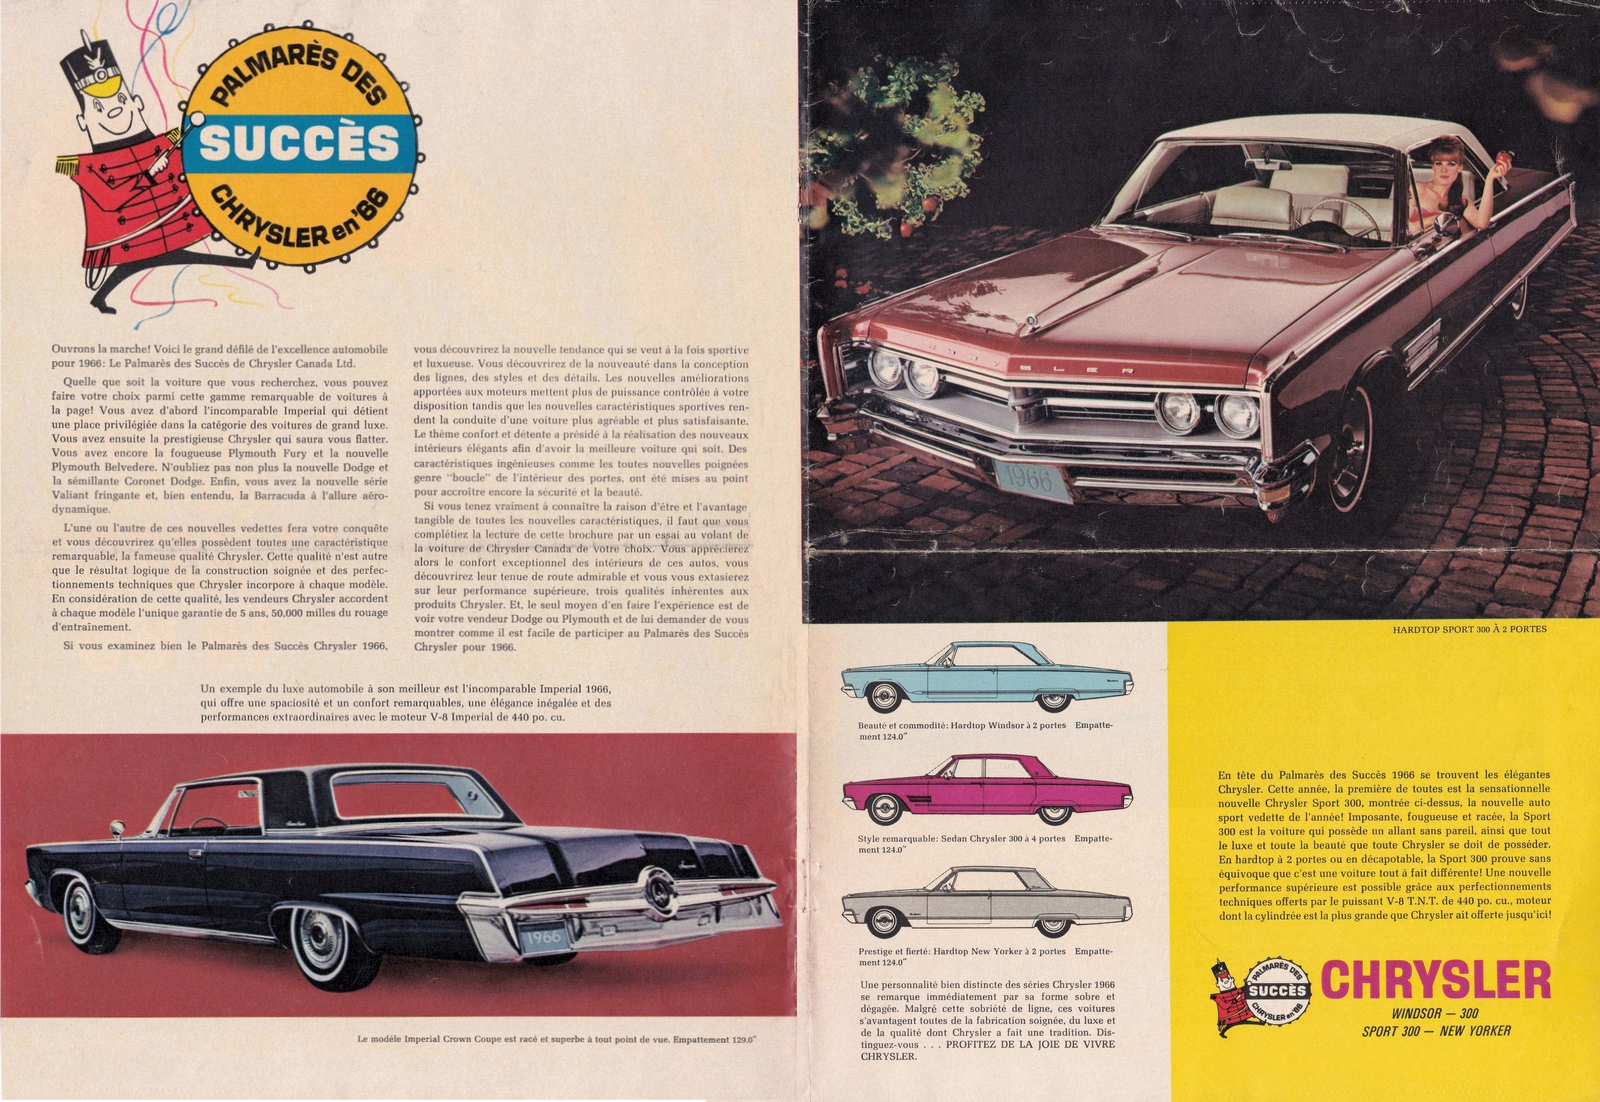 n_1966 Chrysler Full Line Handout (Cdn-Fr)-02-03.jpg